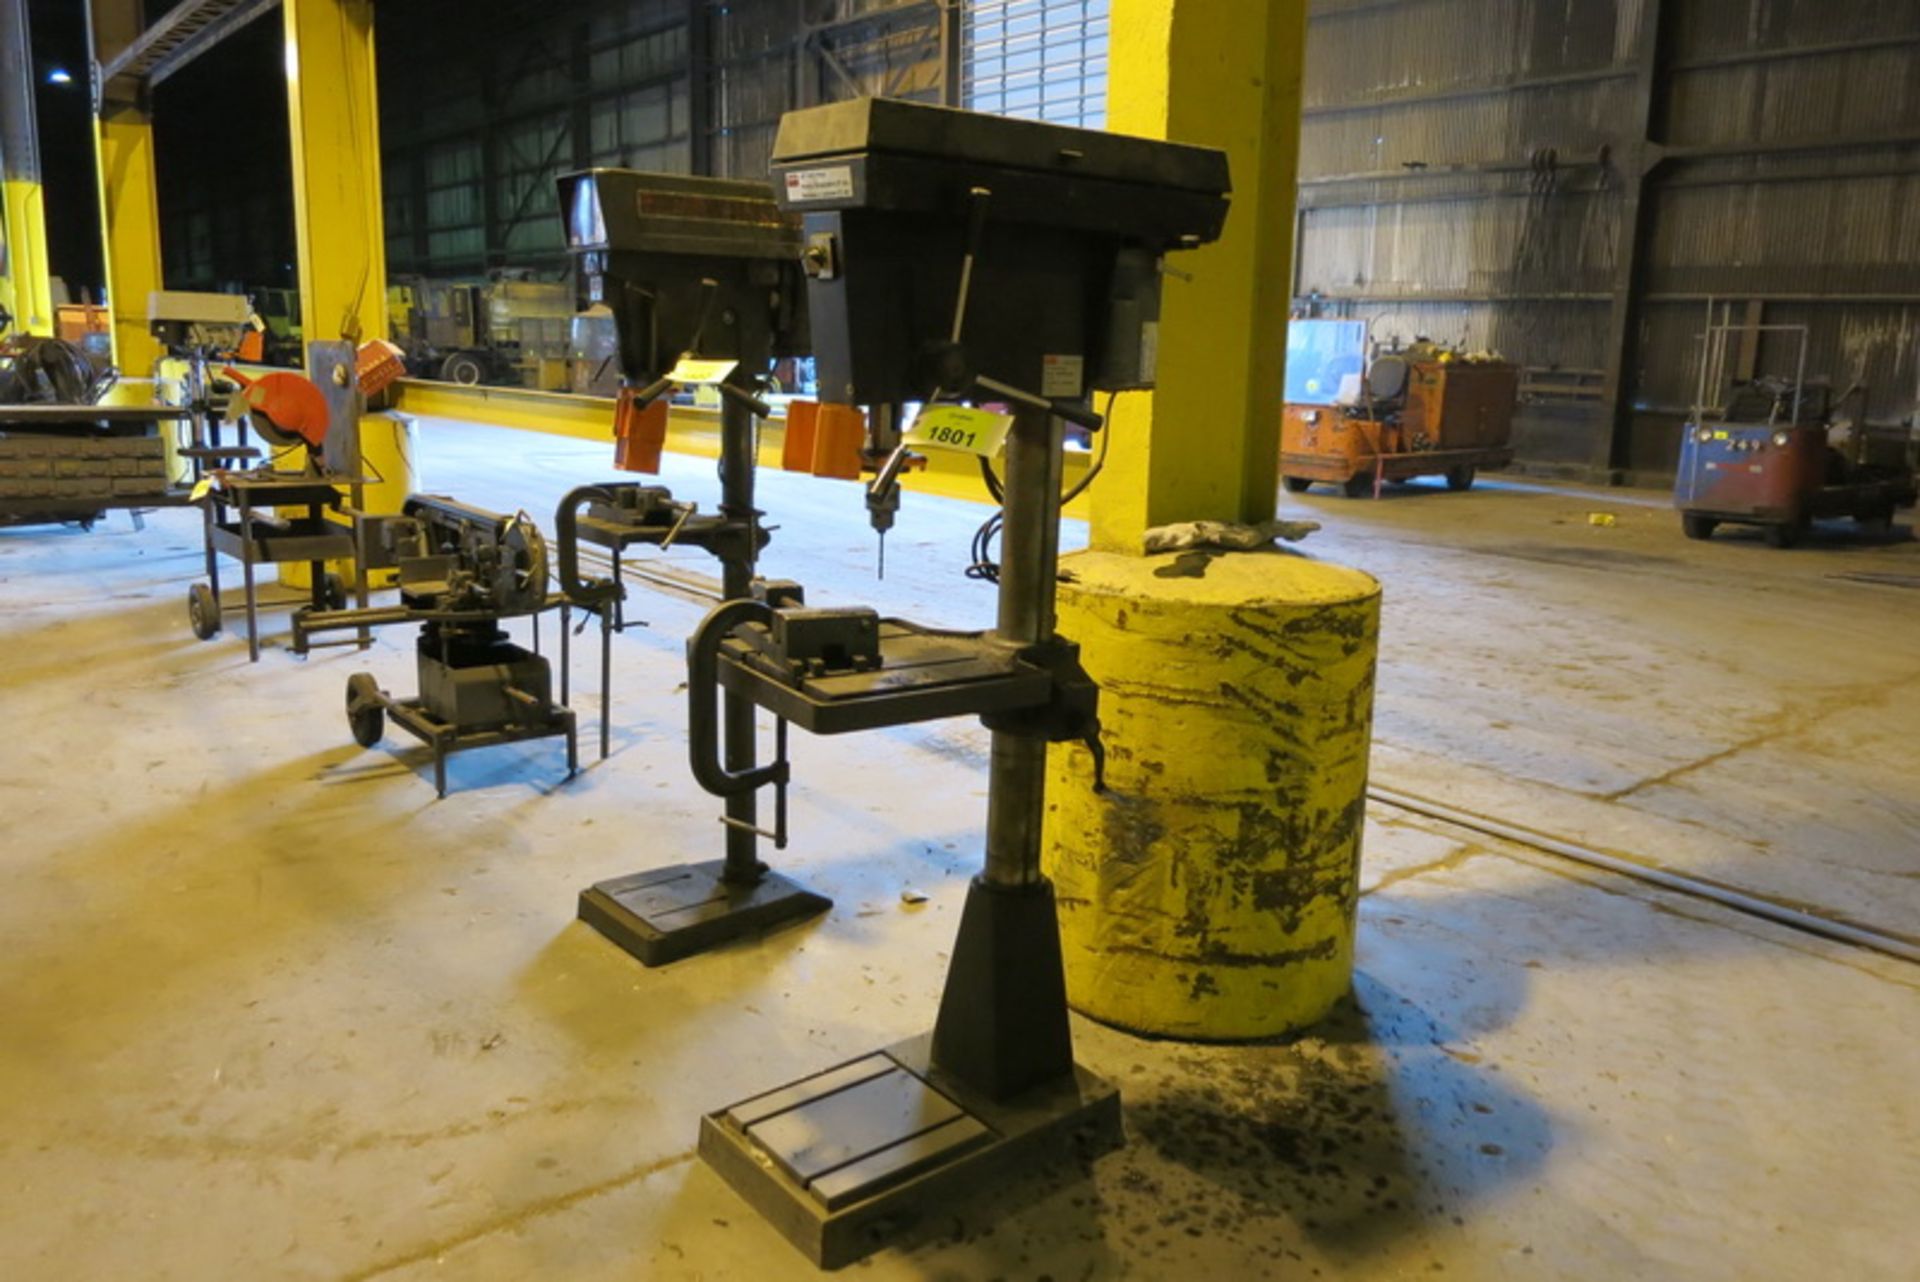 Dayton 20" drill press, pedestal with machine vise